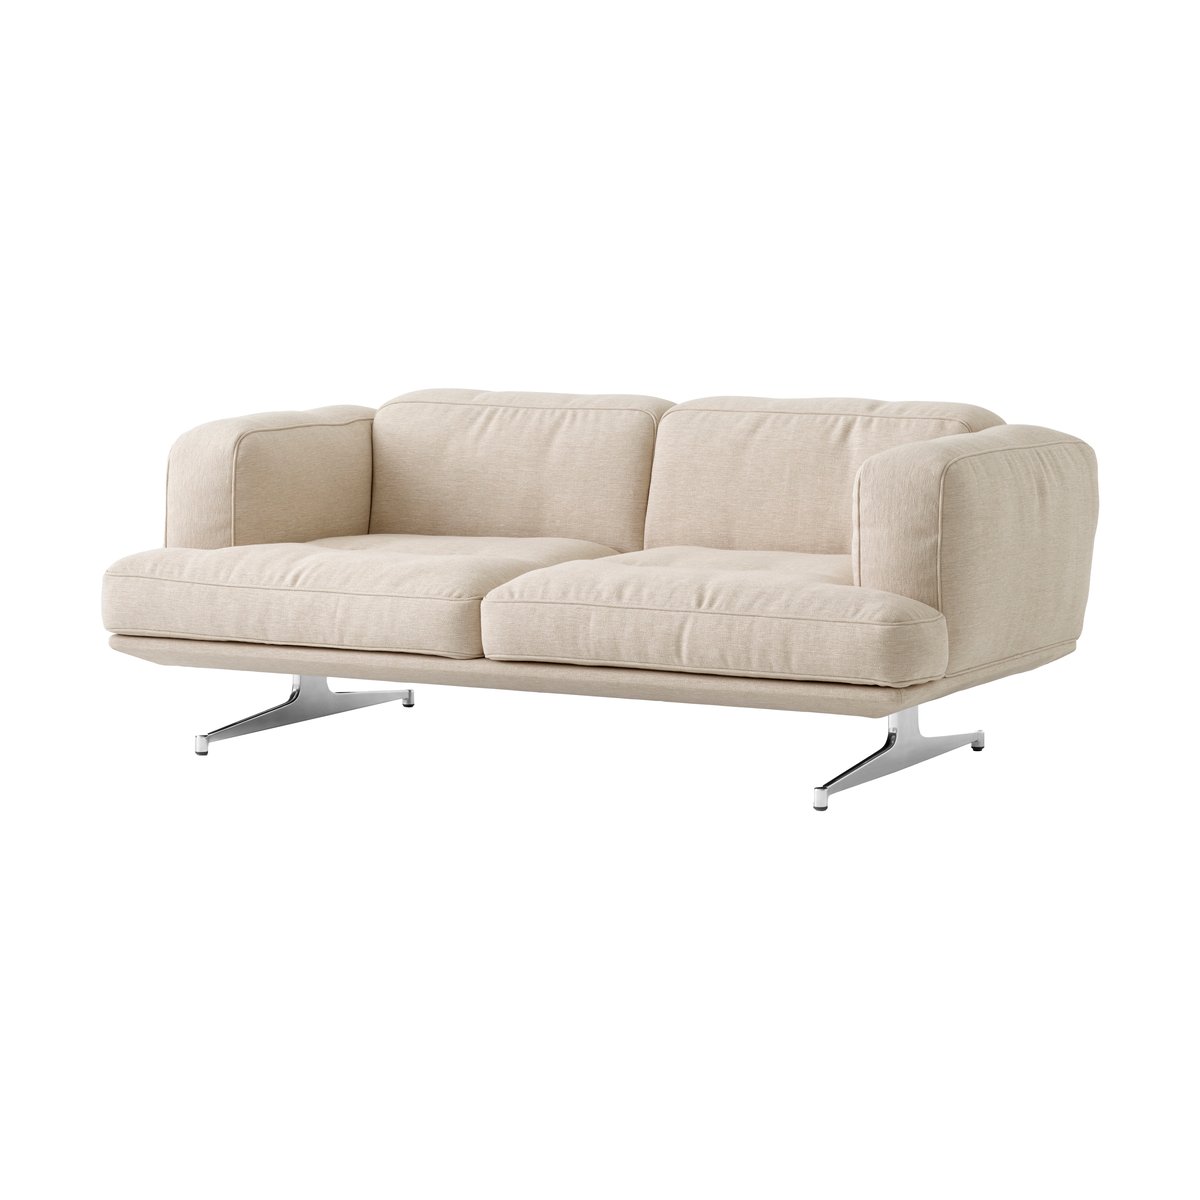 &Tradition Inland AV22 sohva 2-paikkainen Clay 0011-polished aluminium